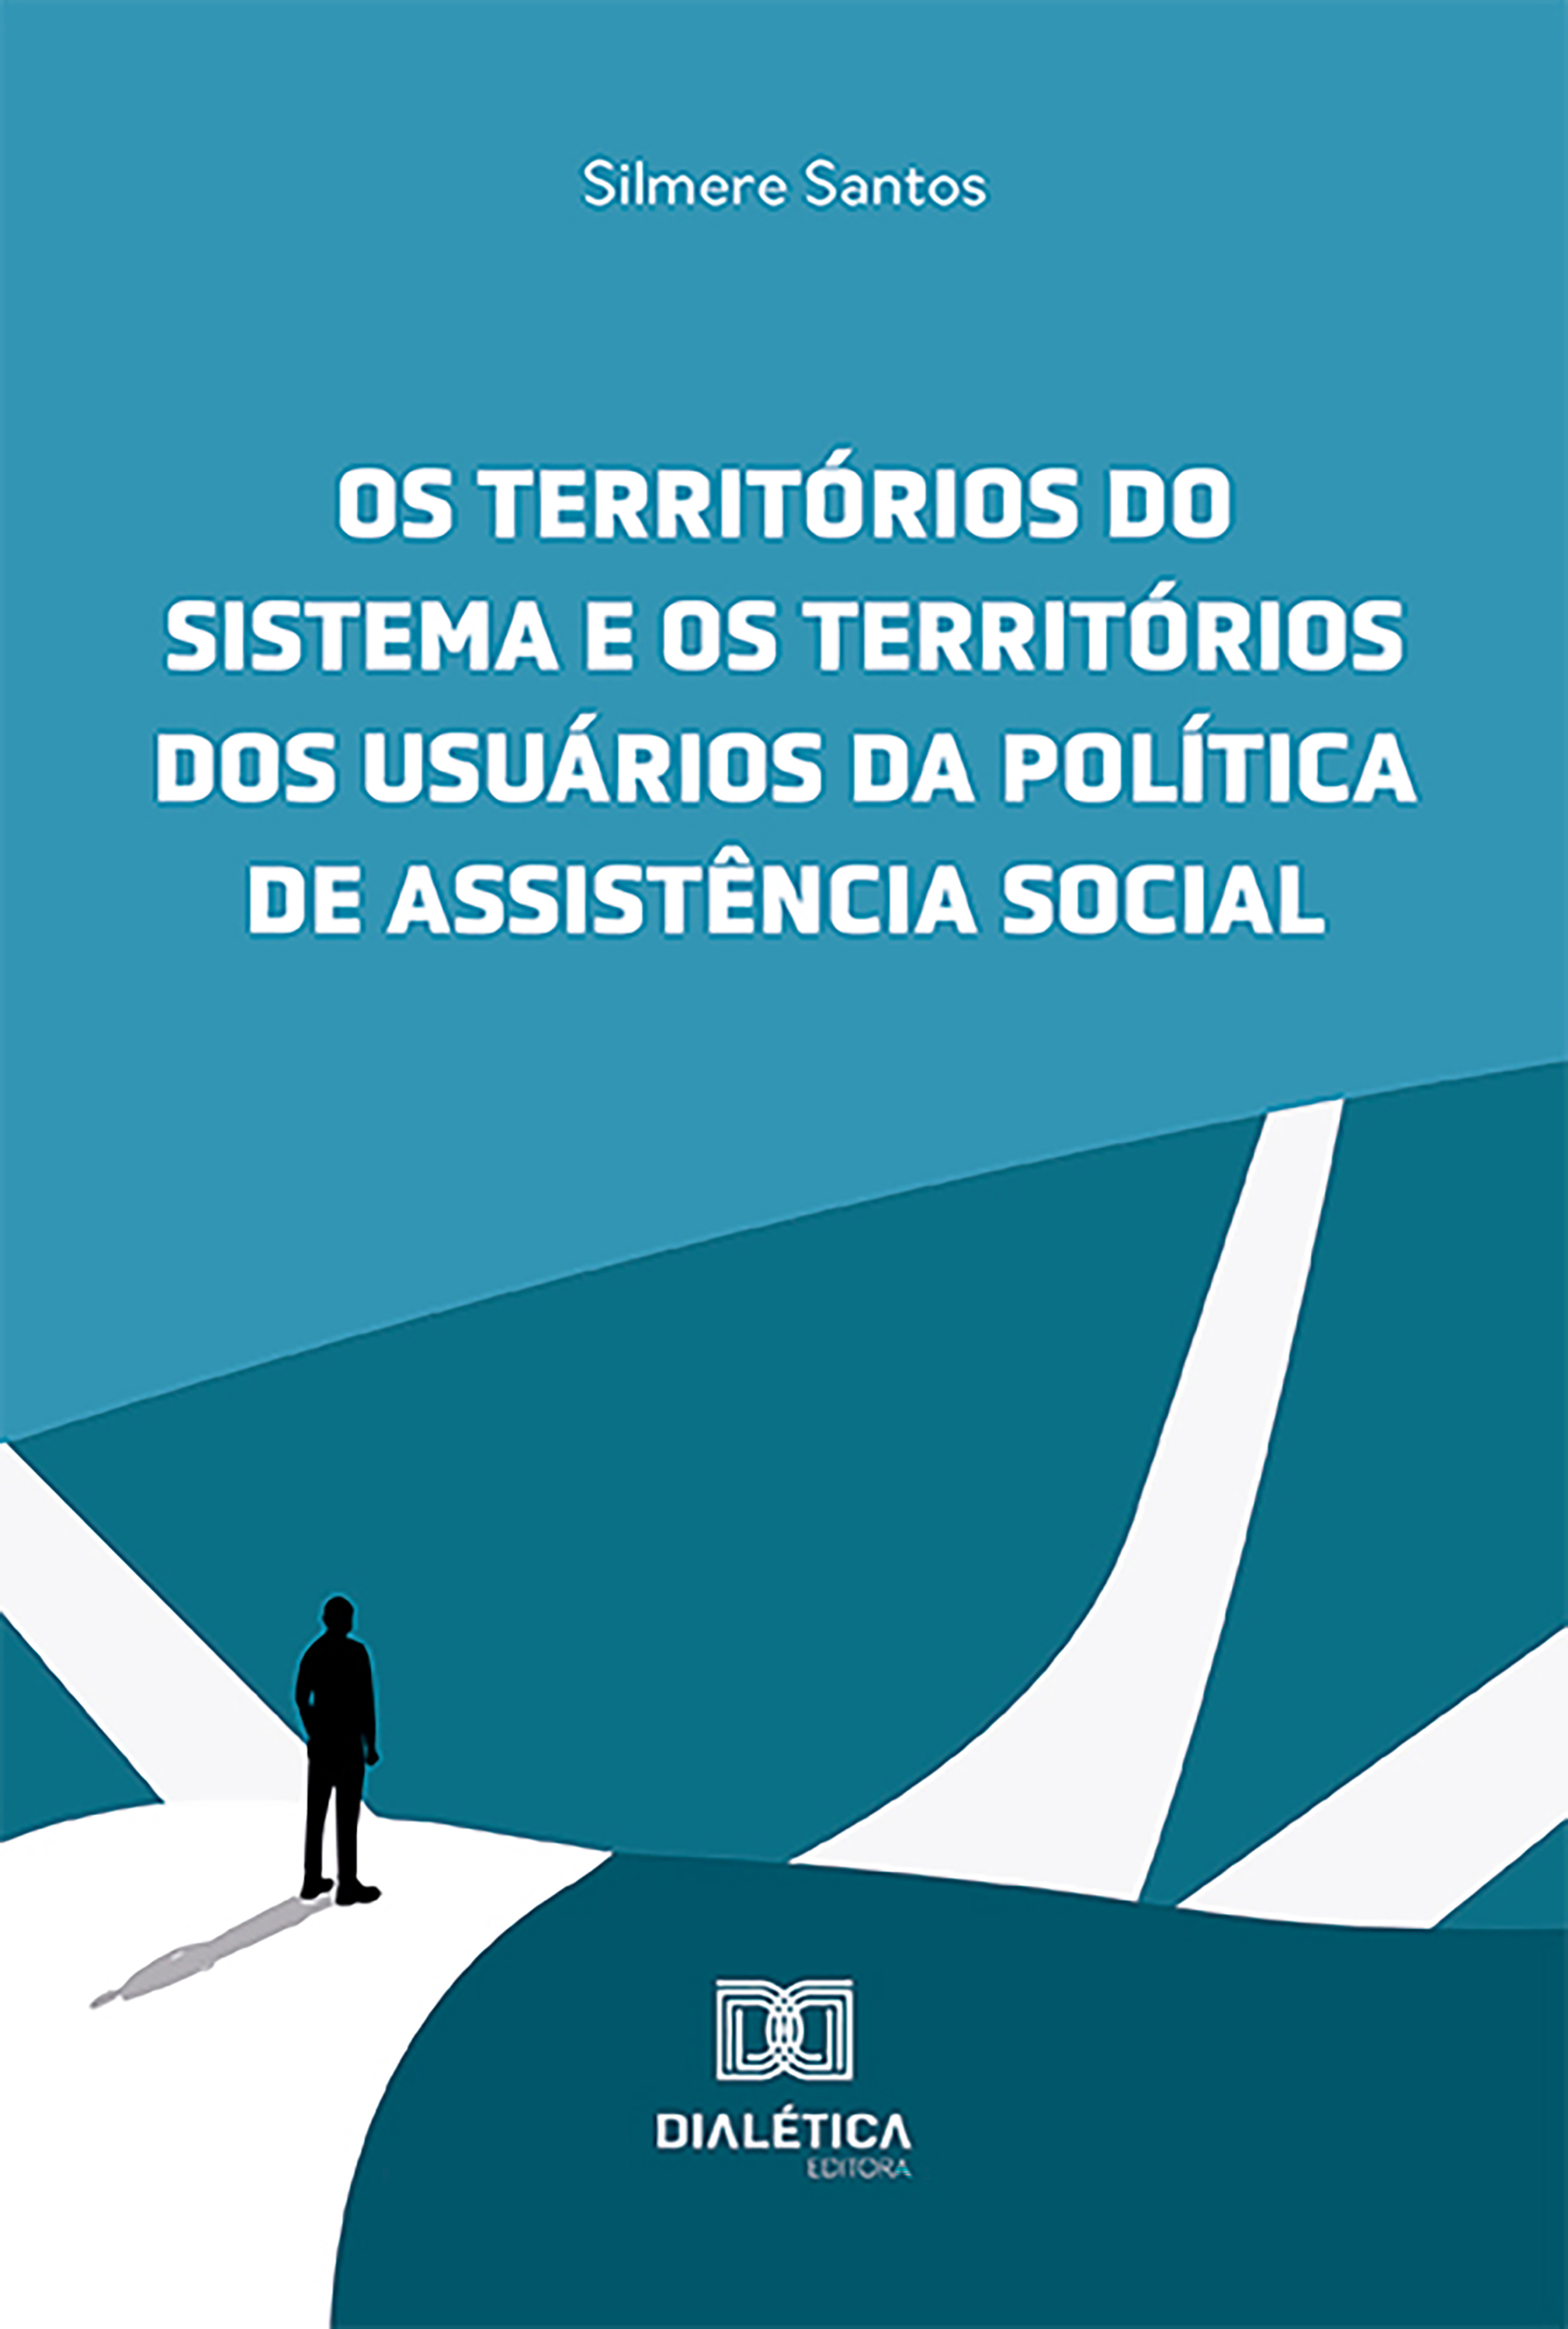 Os territórios do sistema e os territórios dos usuários da política de assistência social